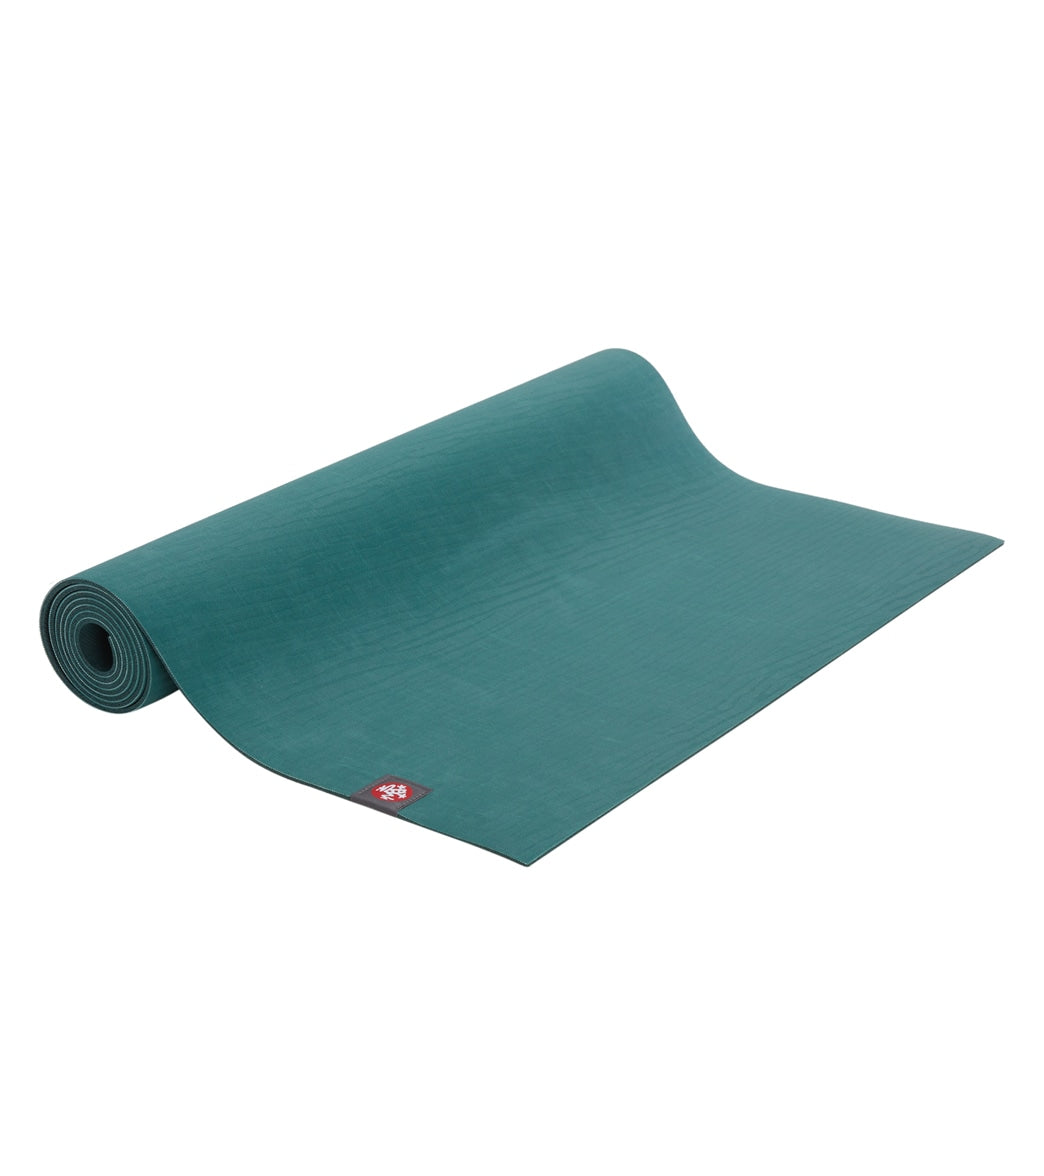 Affordable yoga mat manduka For Sale, Sports Equipment